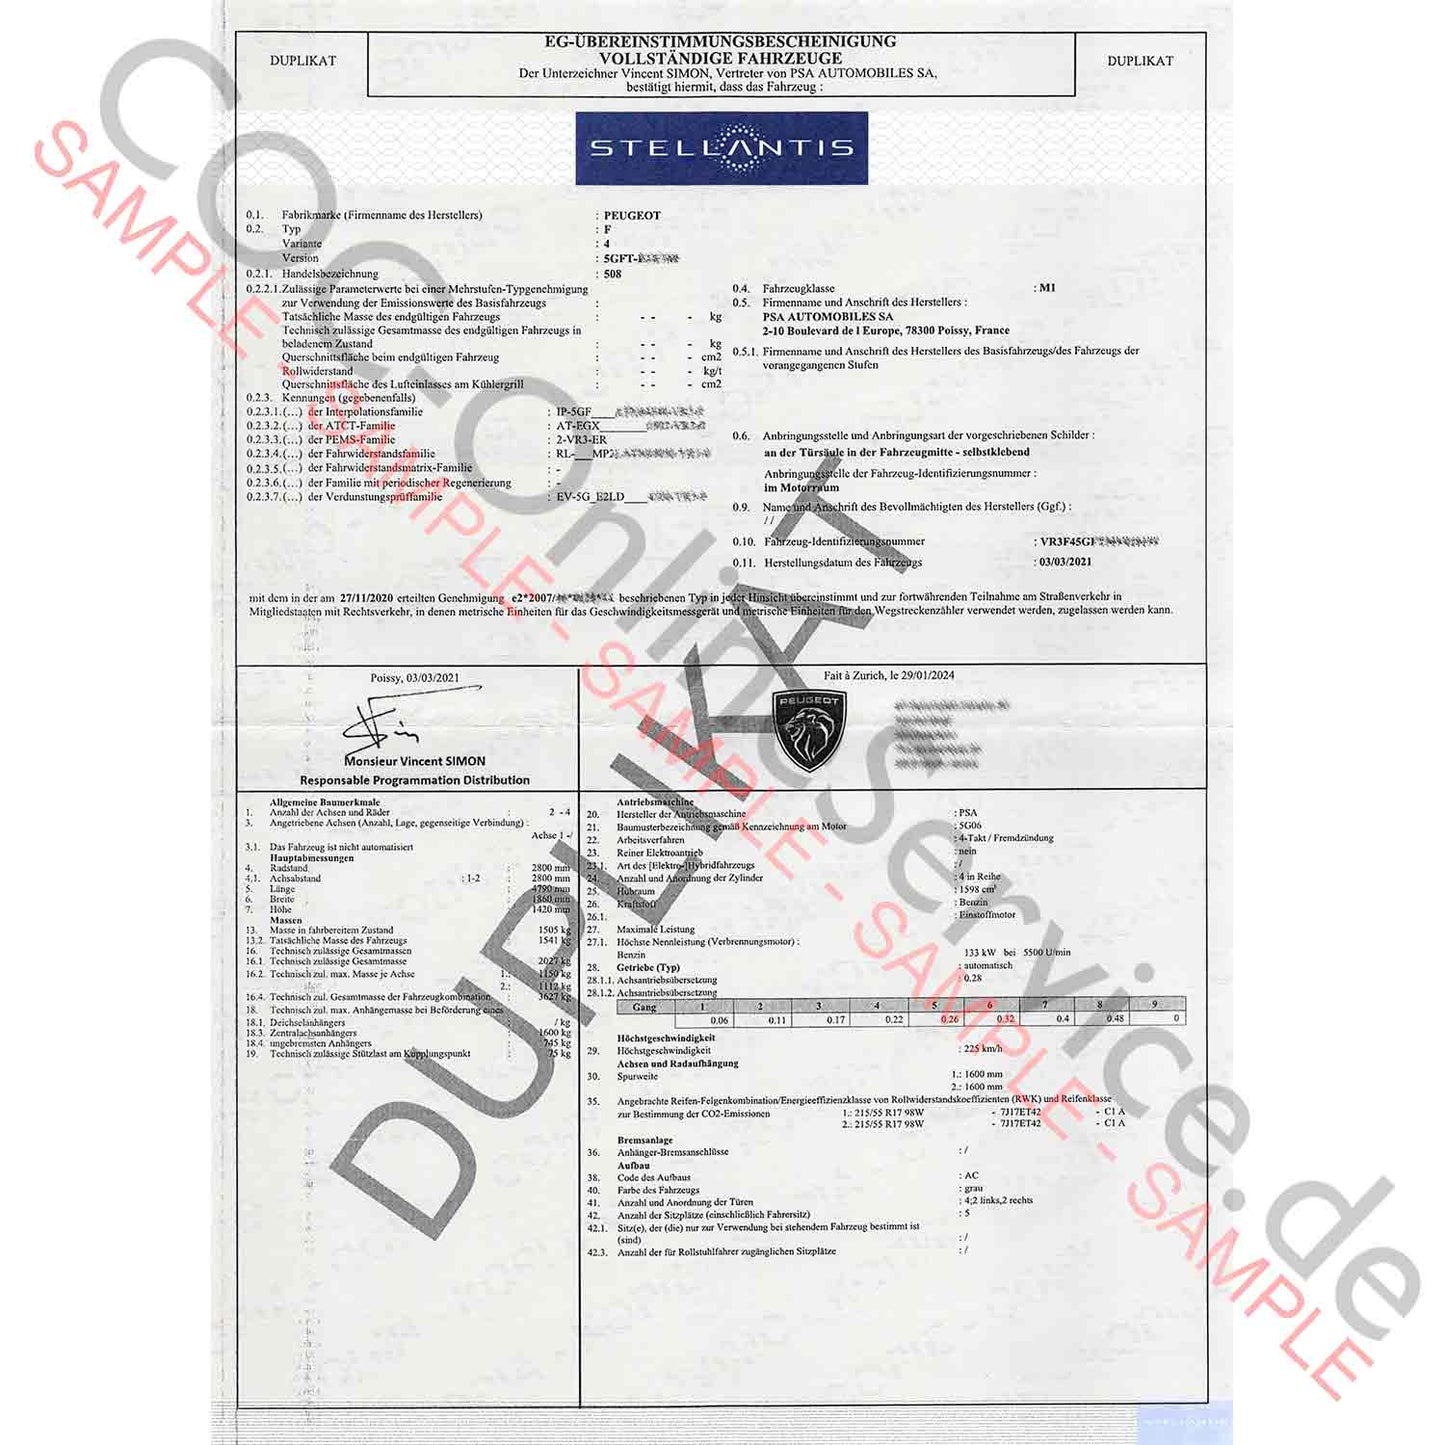 Documentos COC para Peugeot (Certificado de Conformidad)